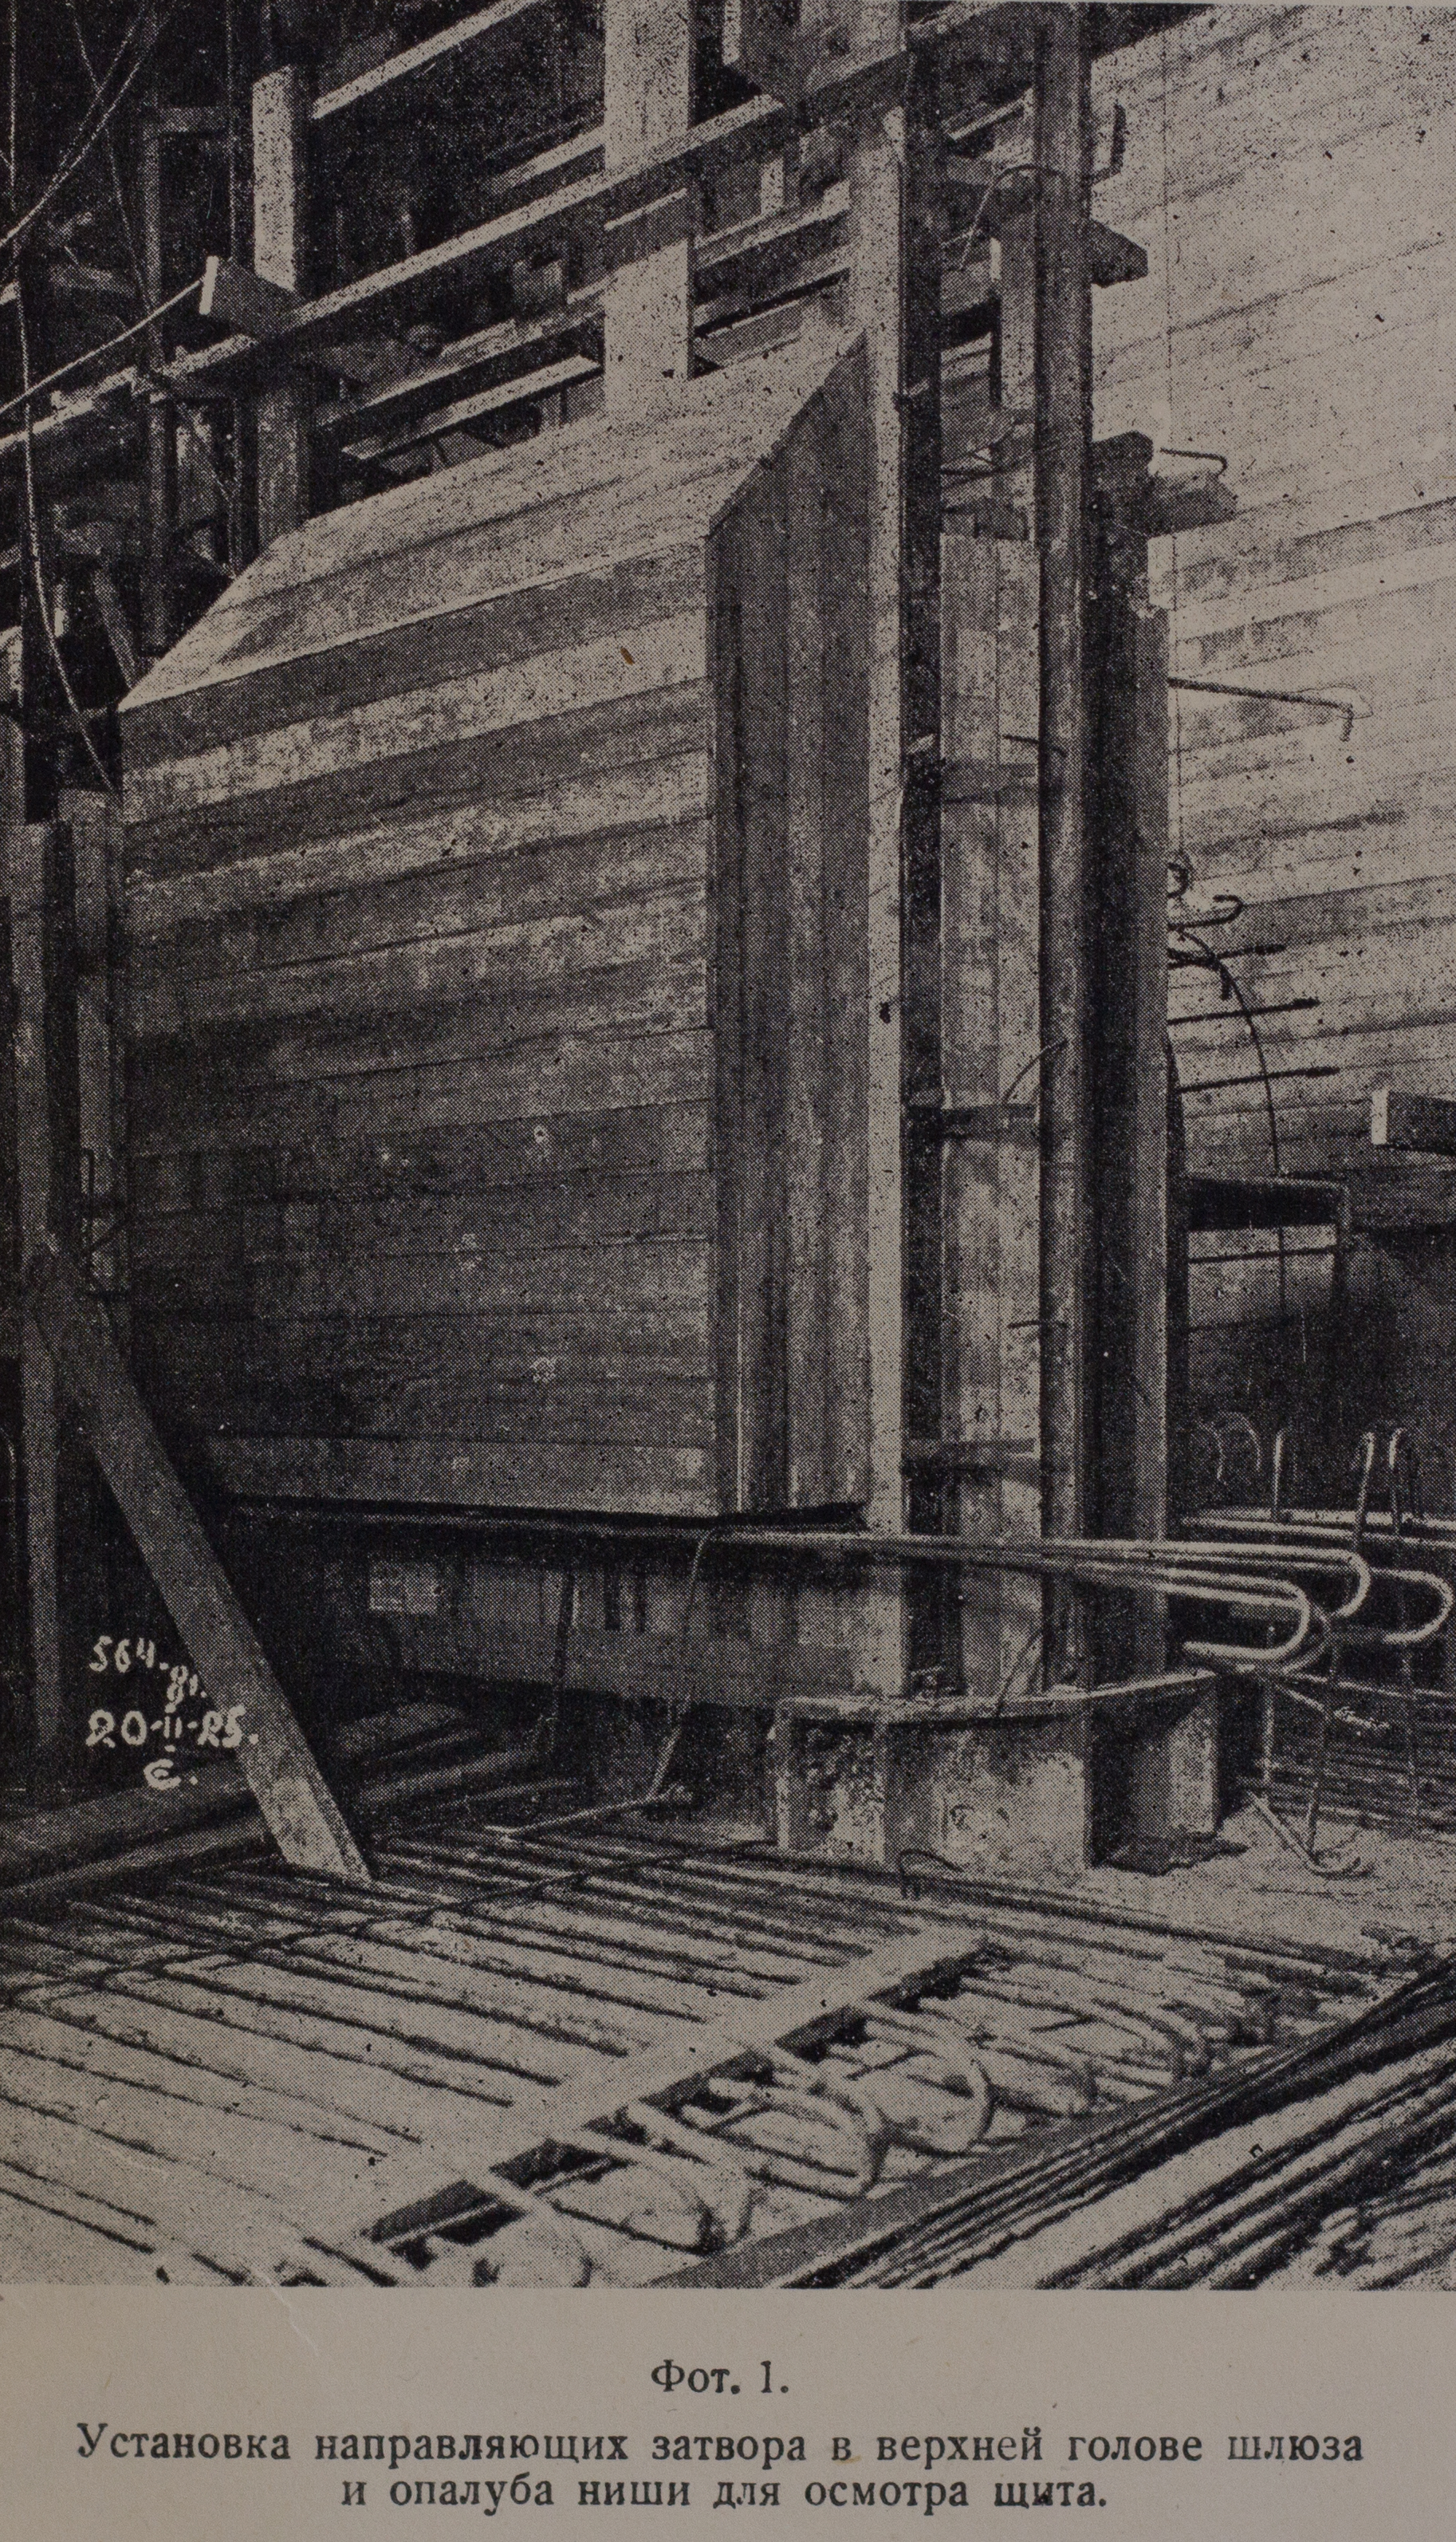 Установка направляющих затвора в верхней голове шлюза и опалуба ниши для осмотра щита (1925 г.)